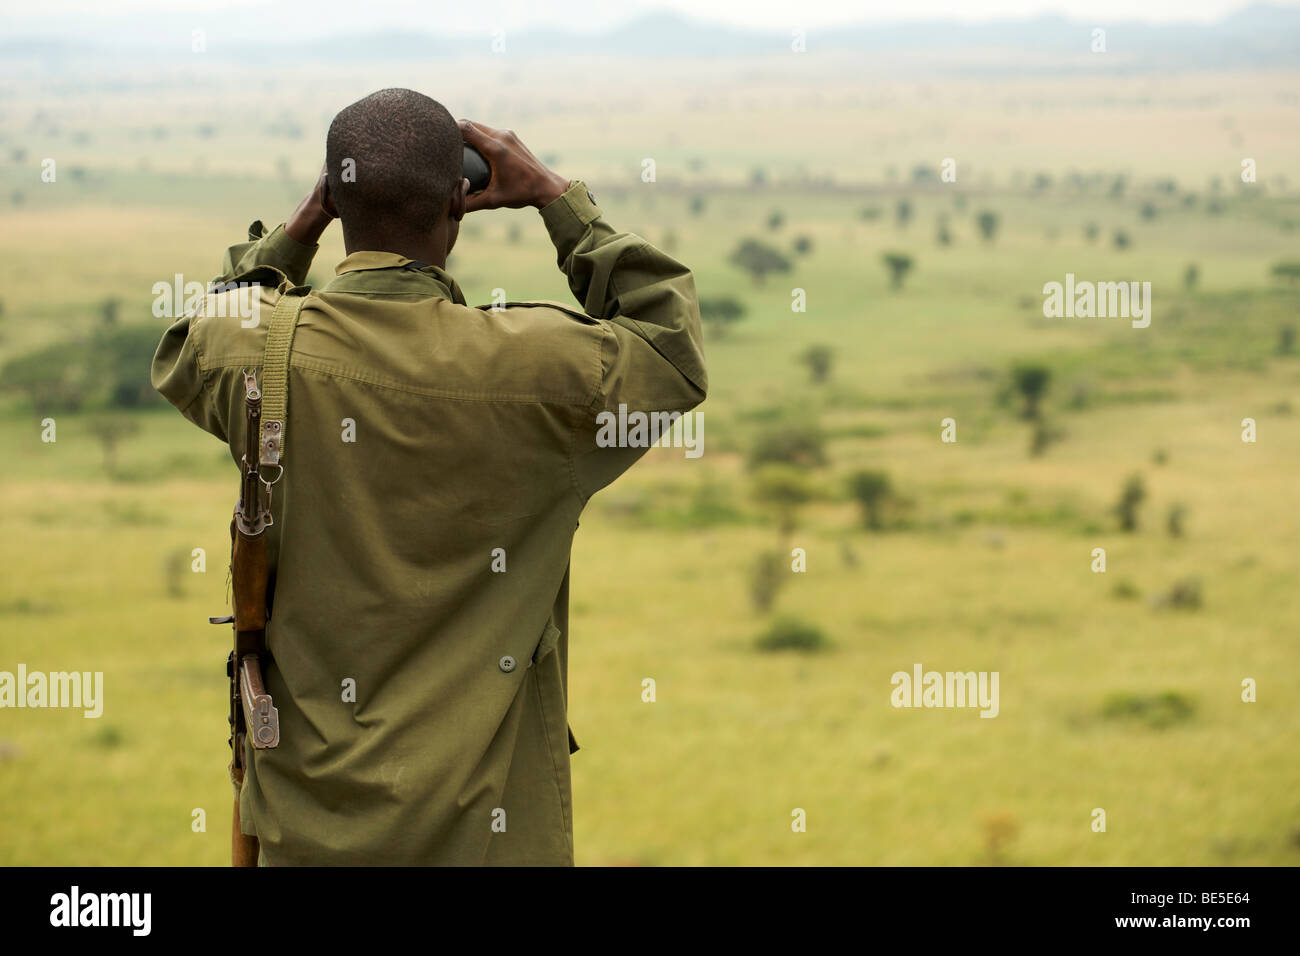 Un armé, Uganda Wildlife Authority binoculars ranger dans le Parc National de Kidepo Valley dans le nord de l'Ouganda. Banque D'Images